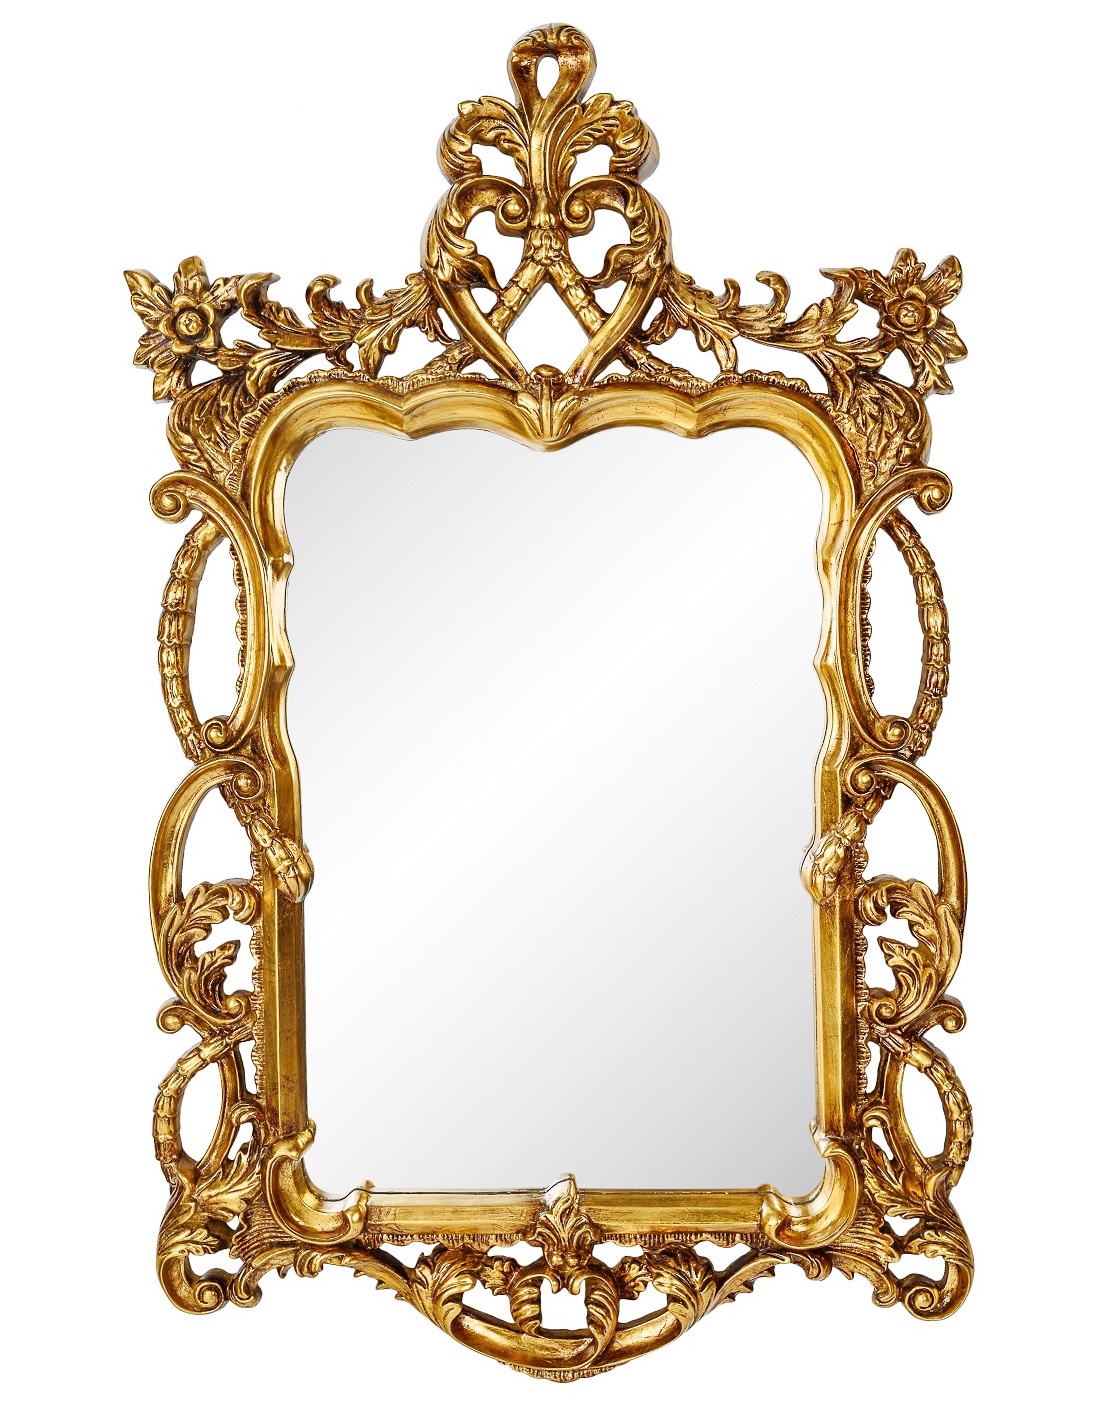 Зеркало в резной раме Floret Gold фото и цена, купить